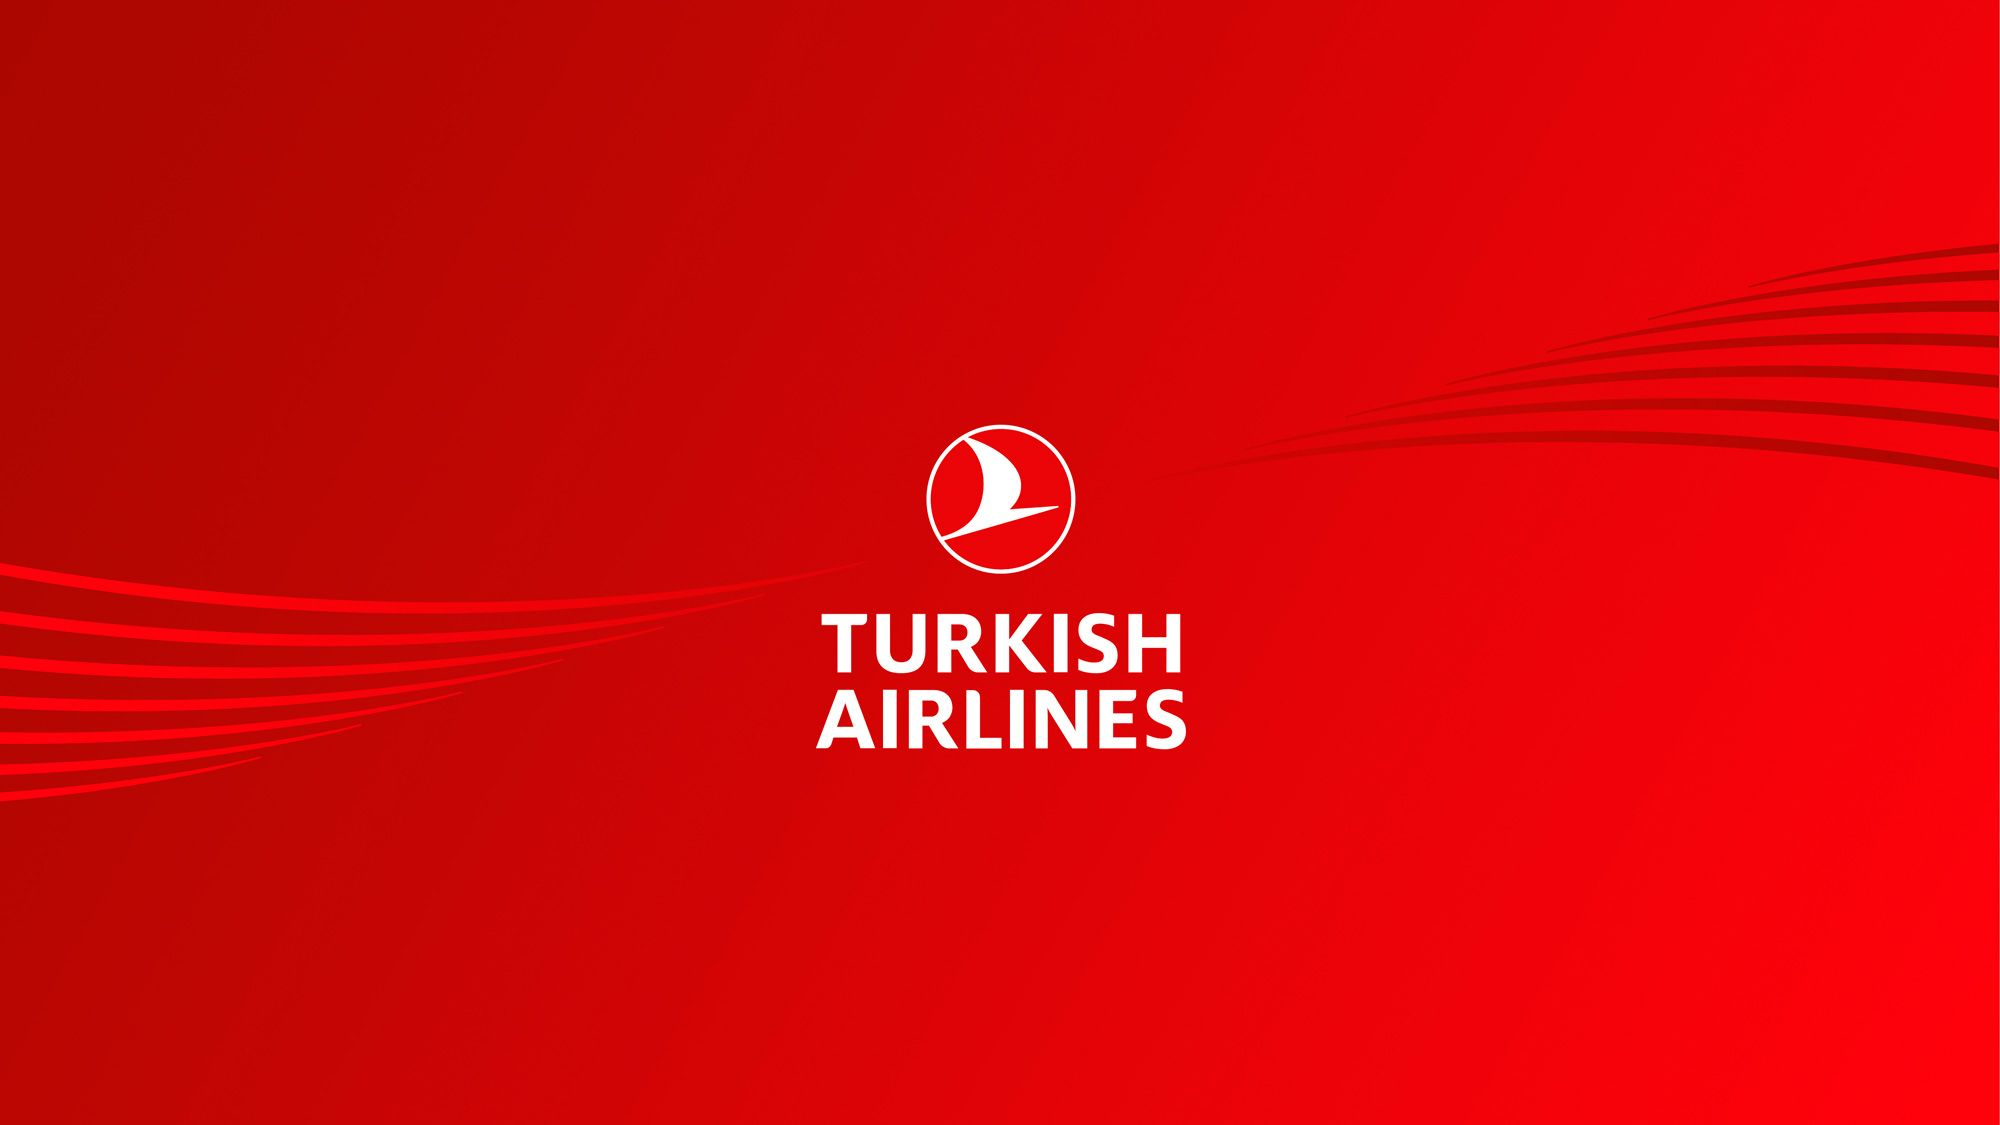 Кыргызские фильмы начали демонстрировать на рейсах Turkish Airlines